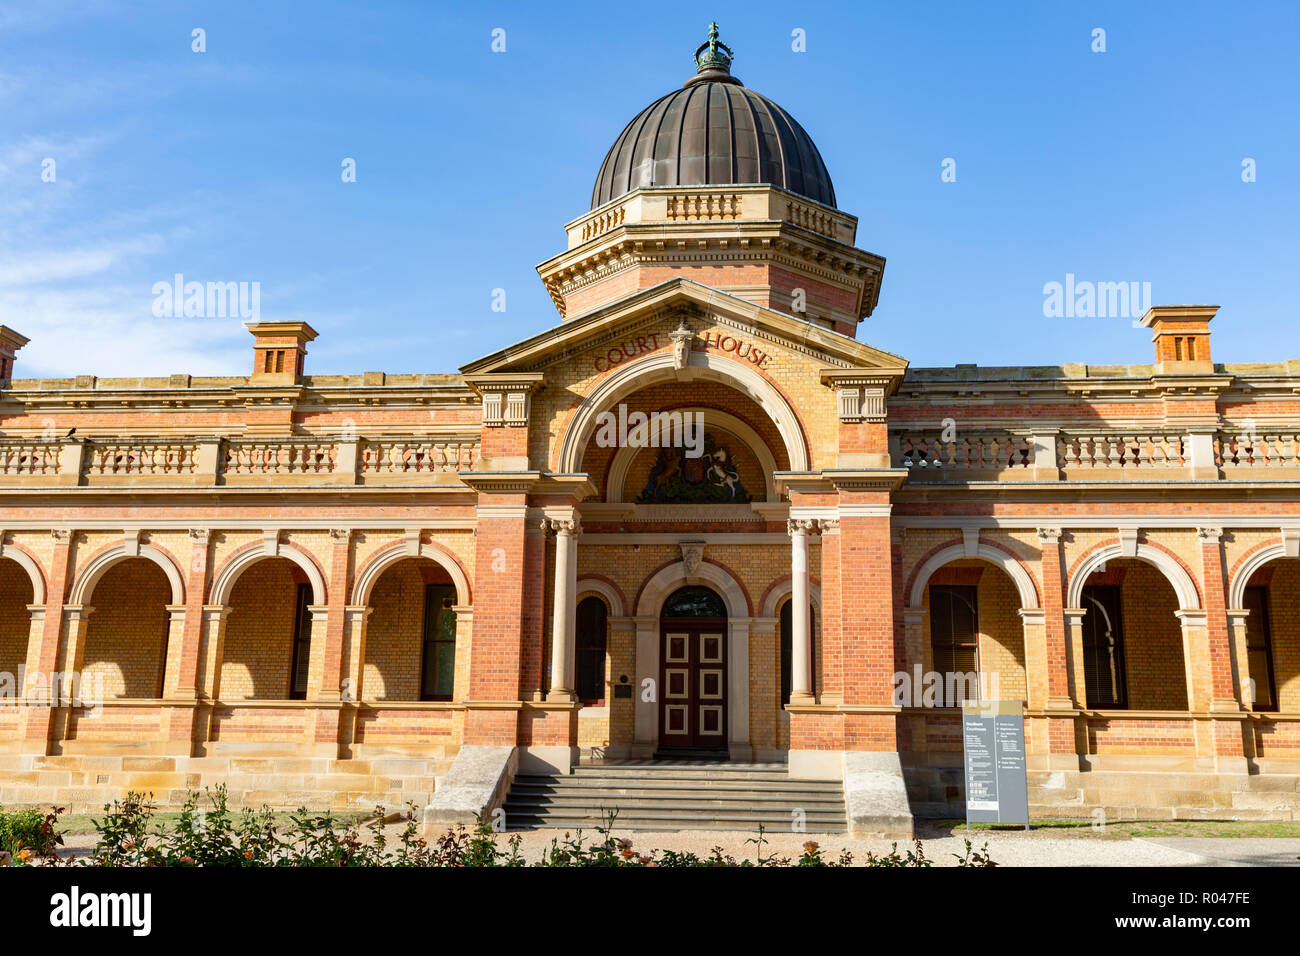 Corte storica costruzione casa nella città terrestre di Goulburn nel Nuovo Galles del Sud, Australia Foto Stock